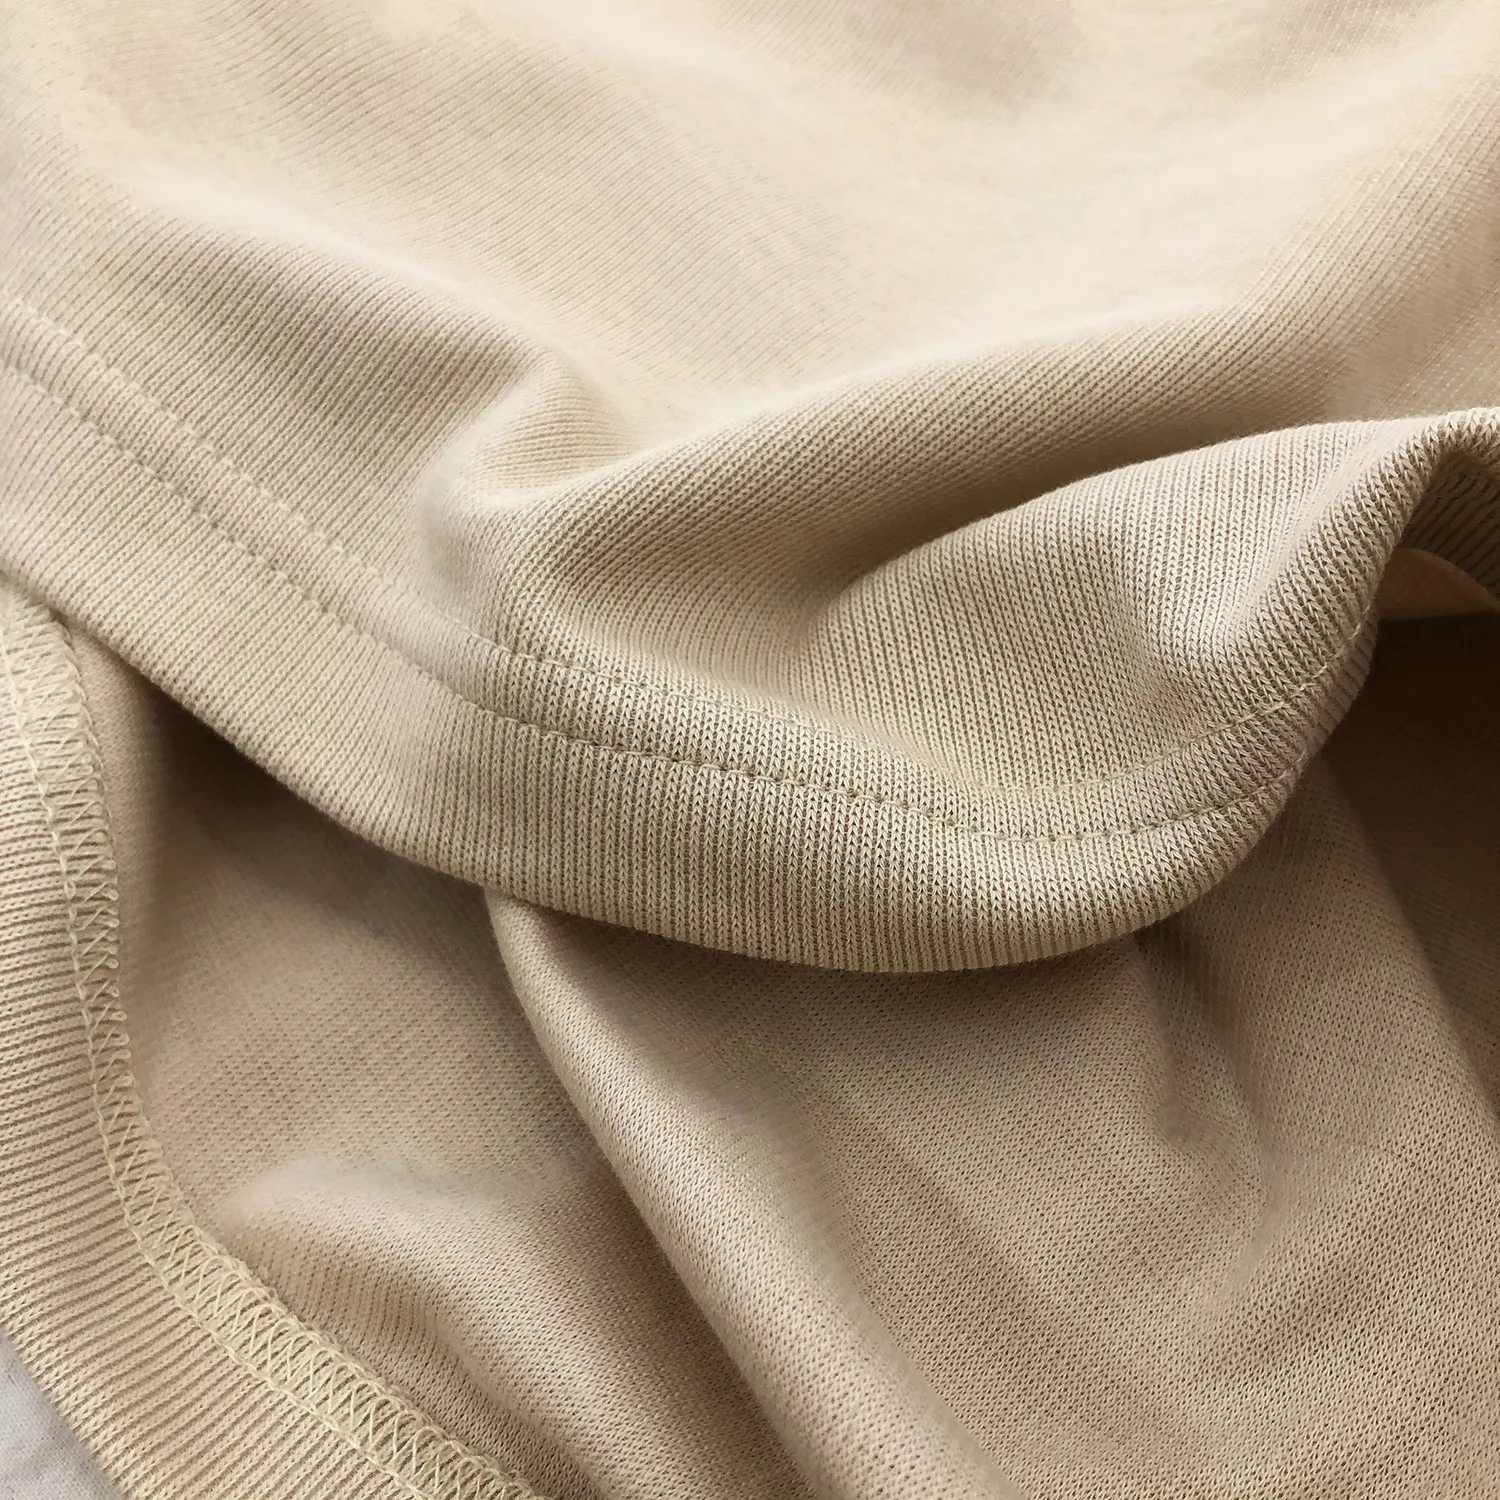 IEFB / Herrenbekleidung 2021 Sommermode Einfarbiges Rollkragen-Kurzarm-T-Shirt für Männer und Frauen im koreanischen Stil Freizeitoberteile 9Y969 210317